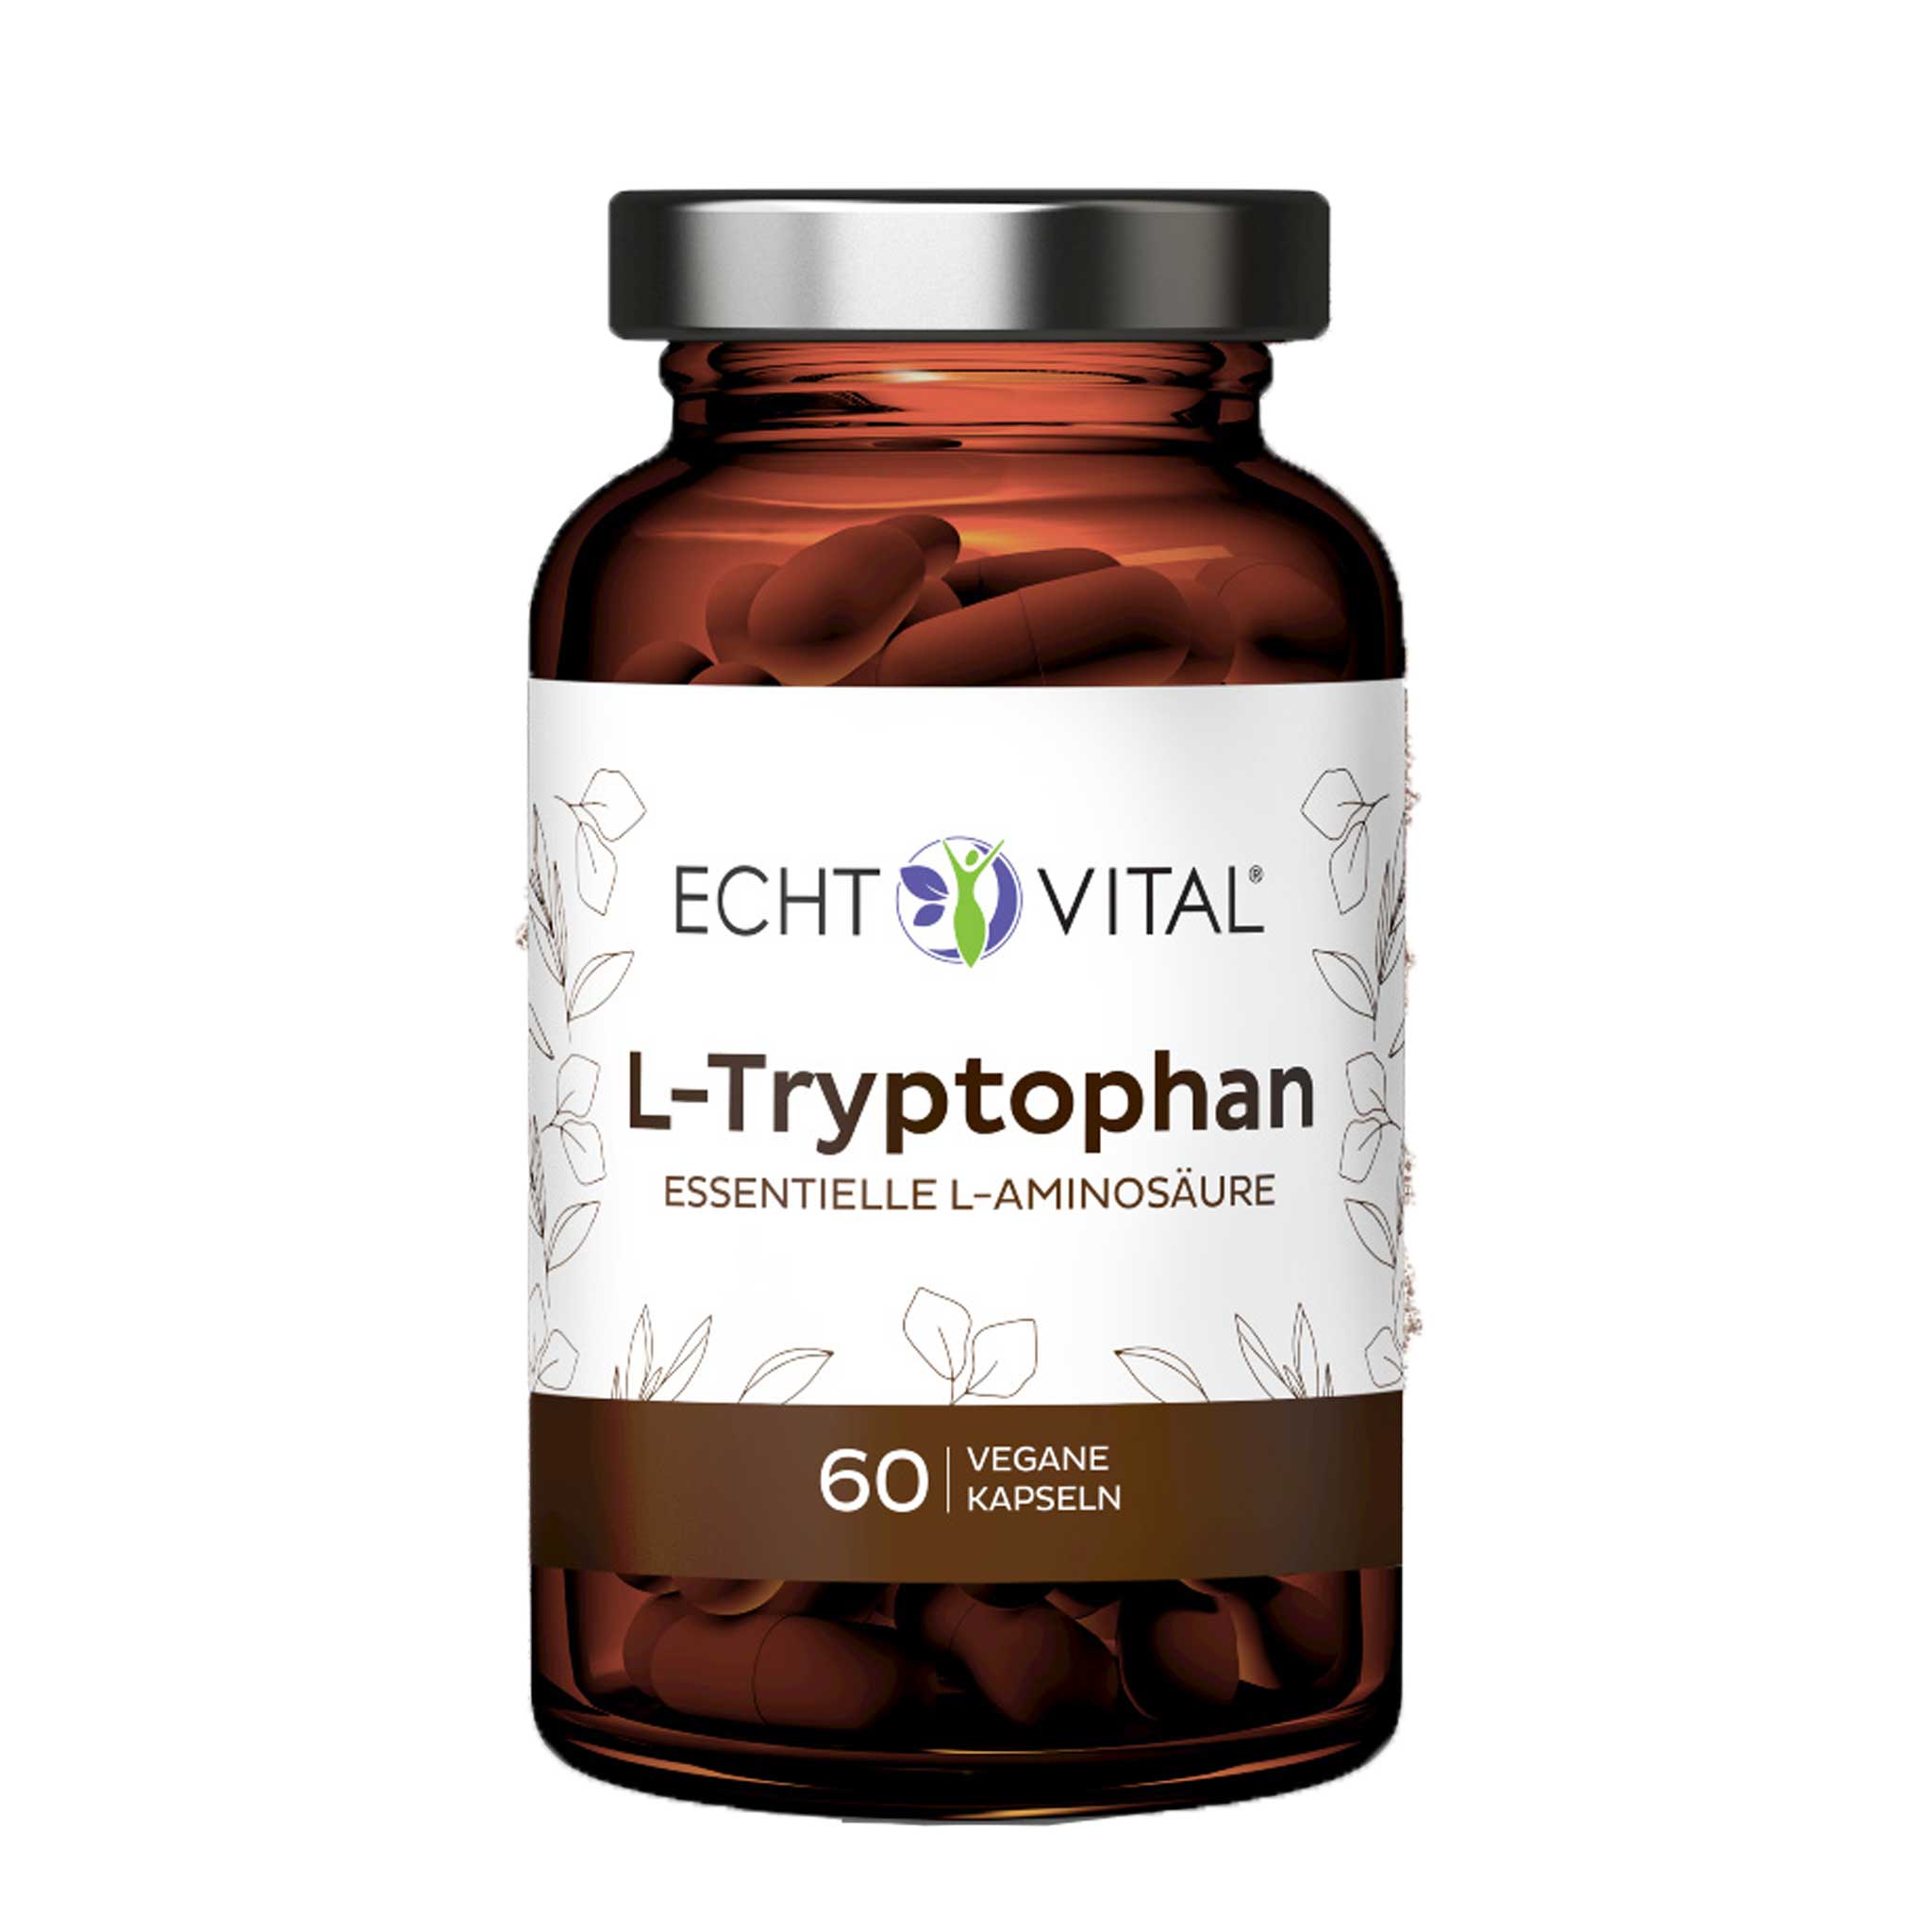 L-Tryptophan von Echt Vital in 500 Milligramm Version beinhaltet 60 vegane Kapseln